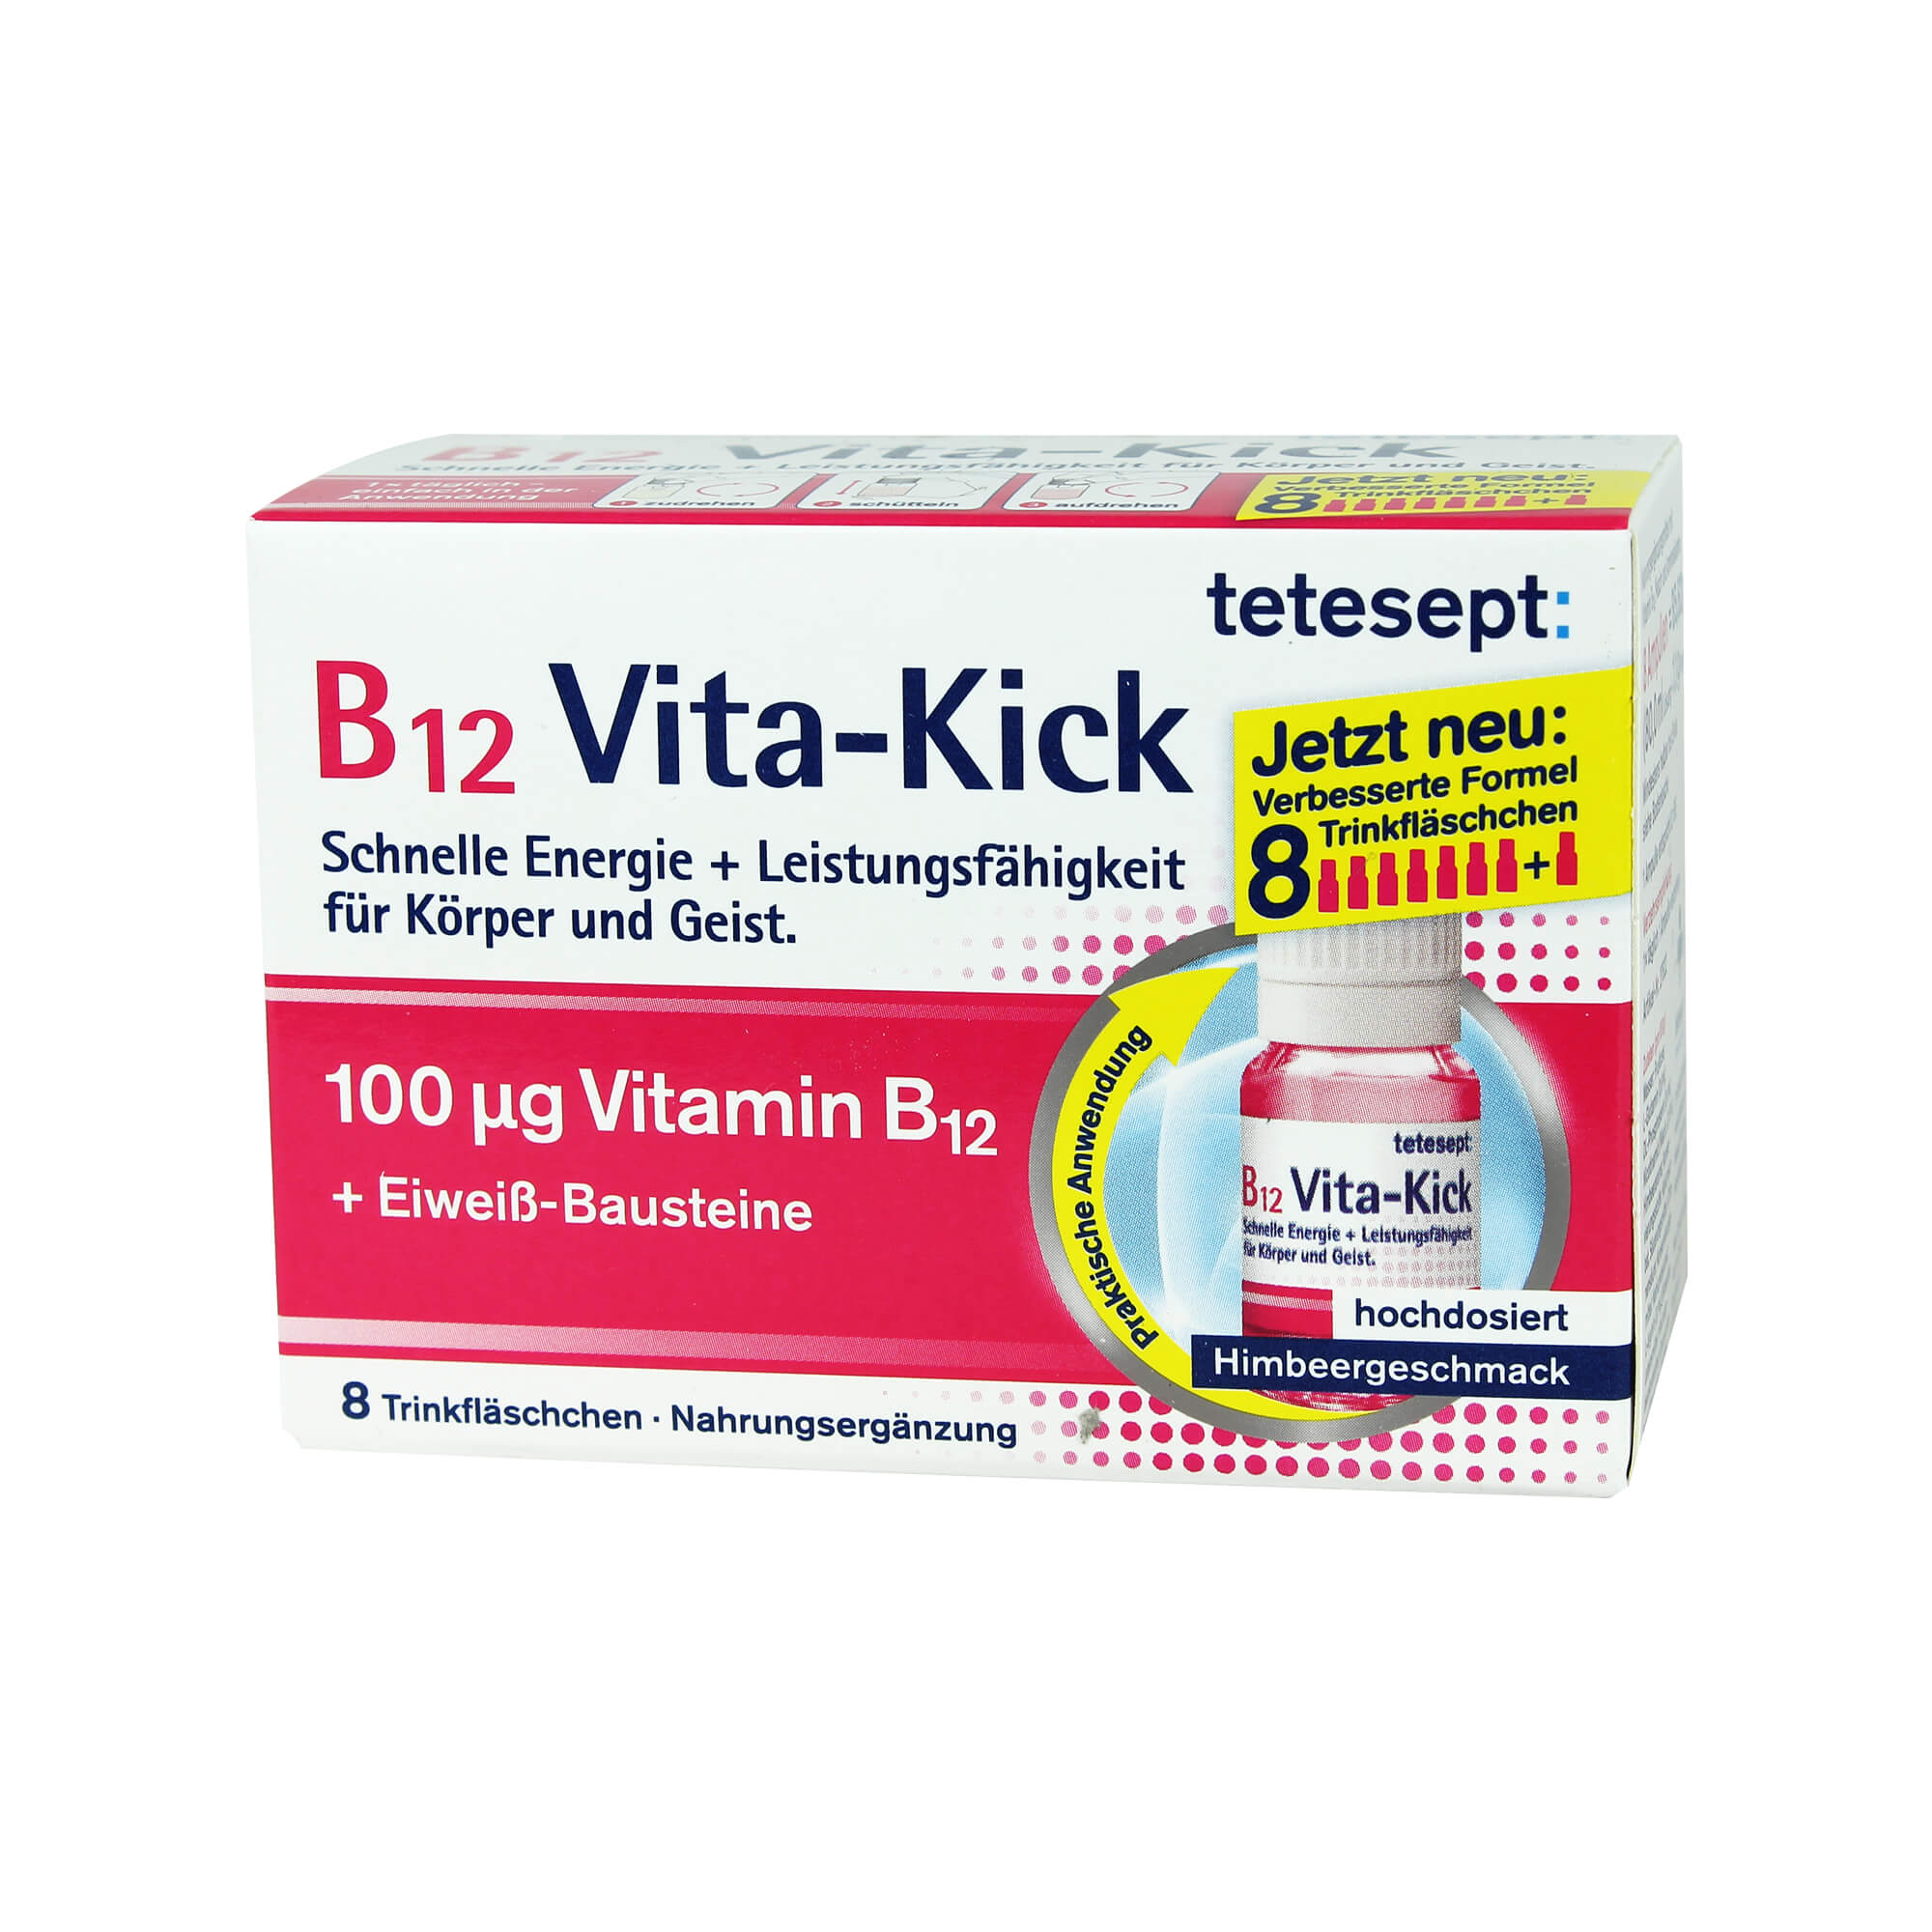 Nahrungsergänzungsmittel mit Vitamin B12, Niacin und Aminosäuren.